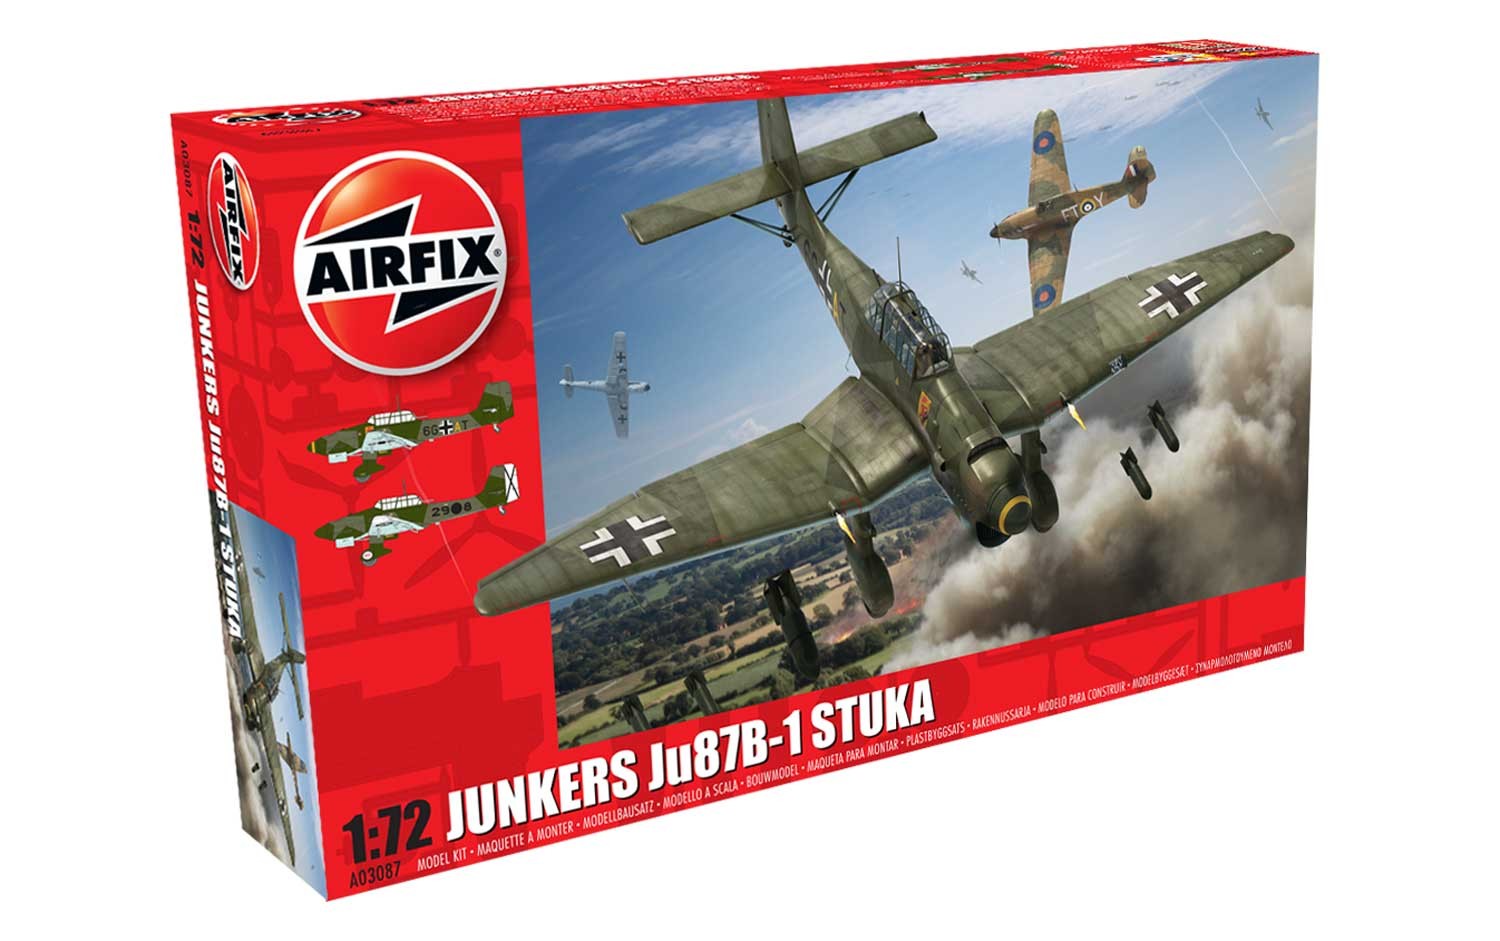 Airfix Junkers JU87 Stuka in 1:72 bouwpakket